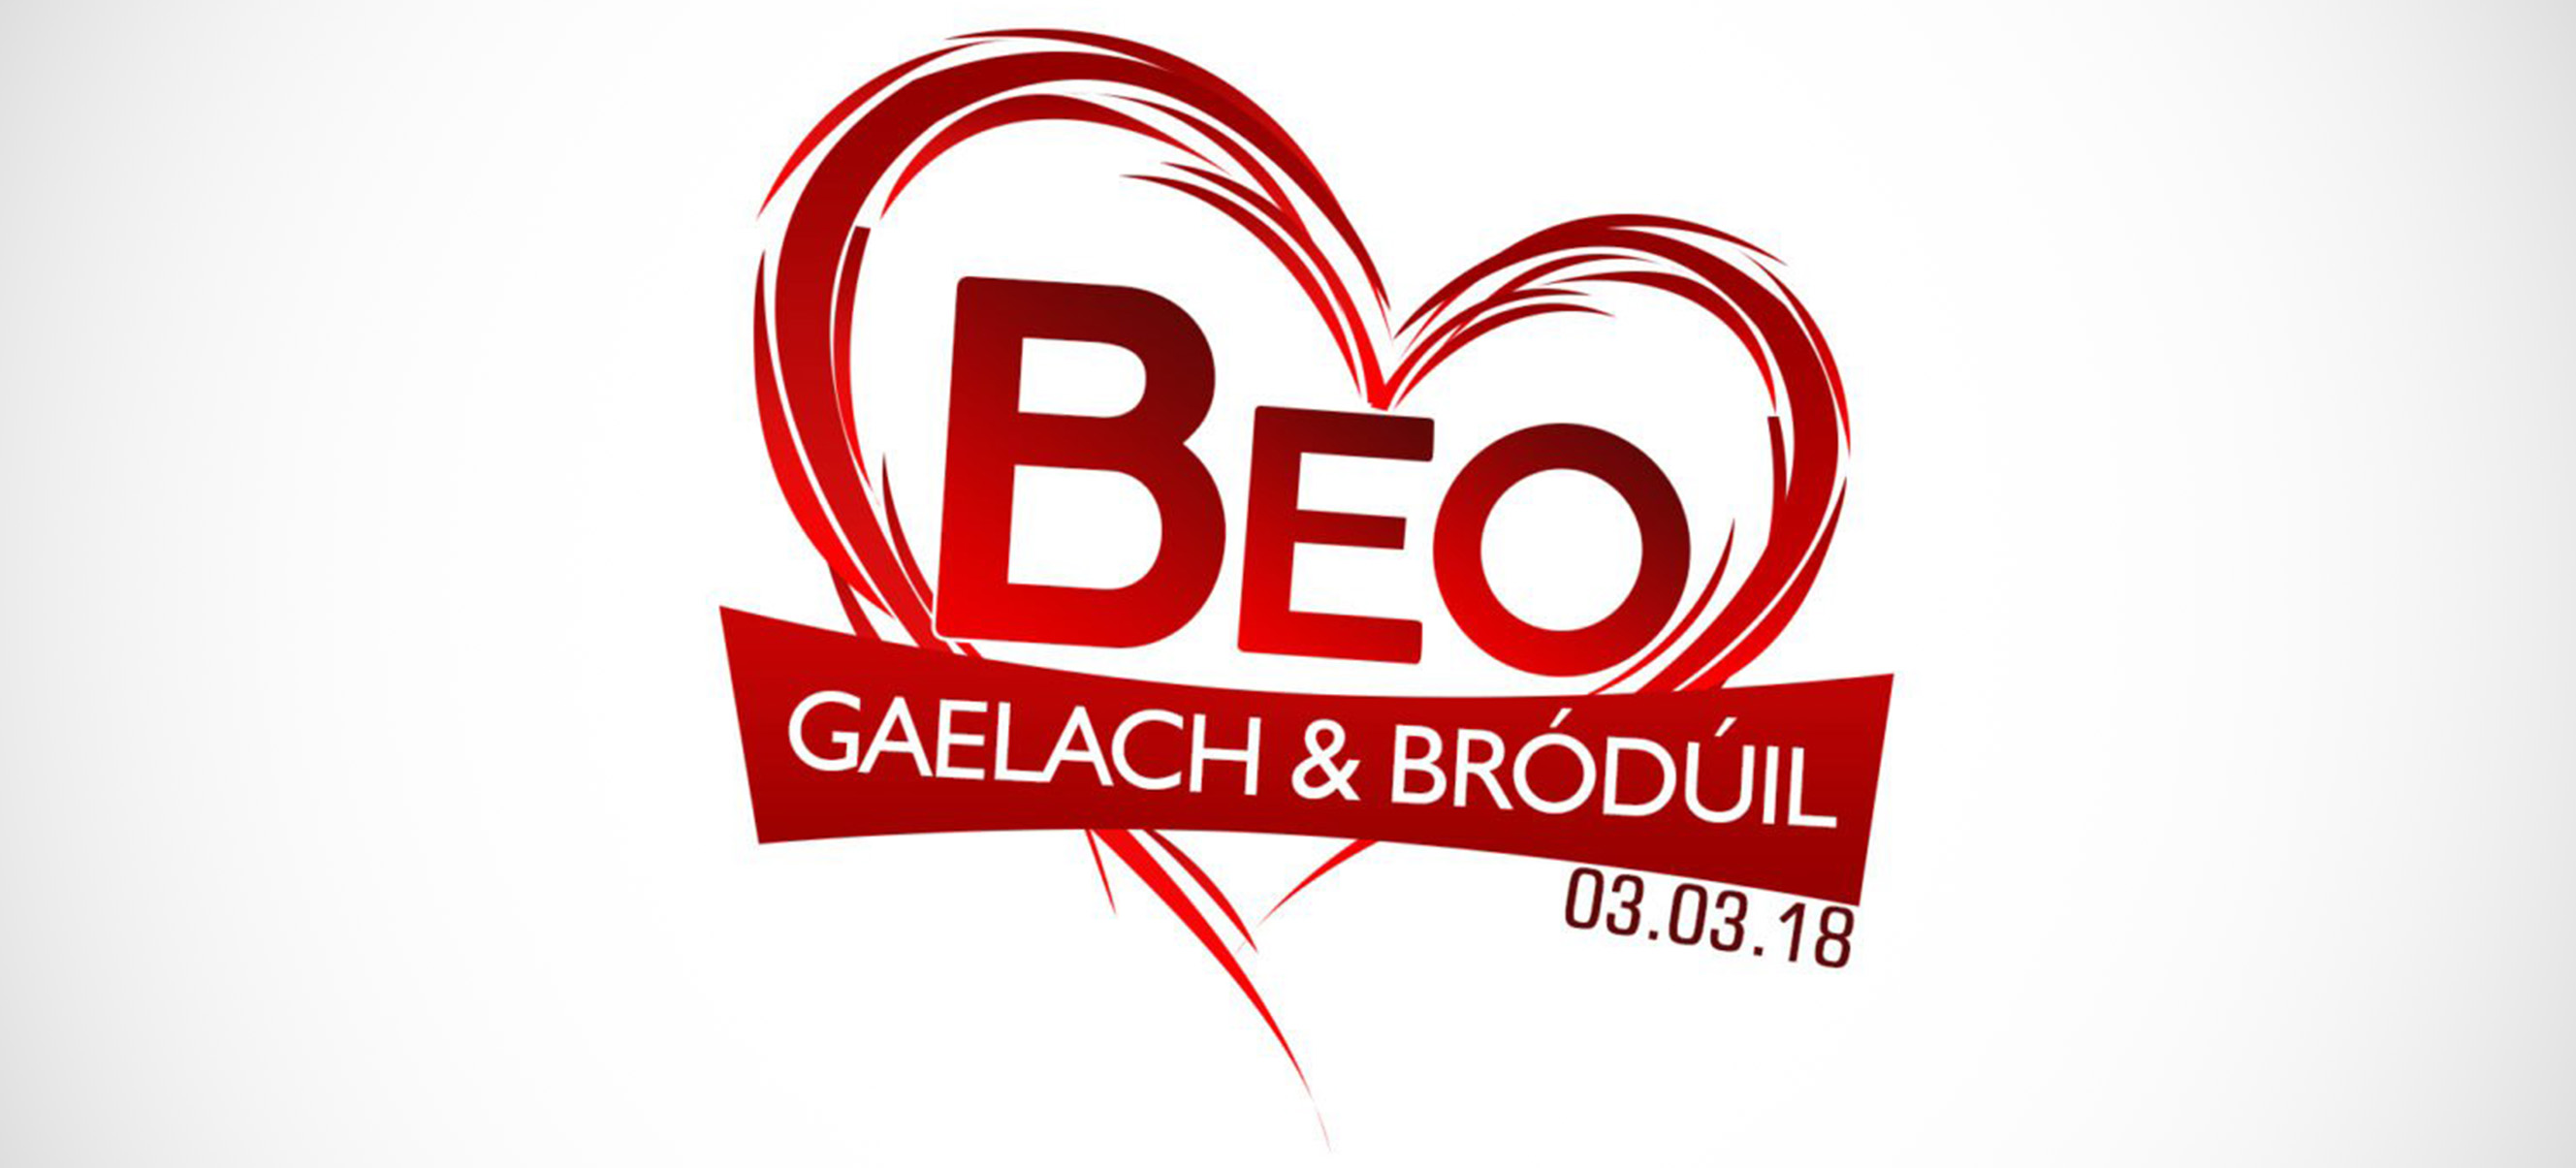 Mórshiúl ‘Beo – Gaelach agus Bródúil’ séidte ar aghaidh go dtí mí Aibreáin ag Stoirm Emma